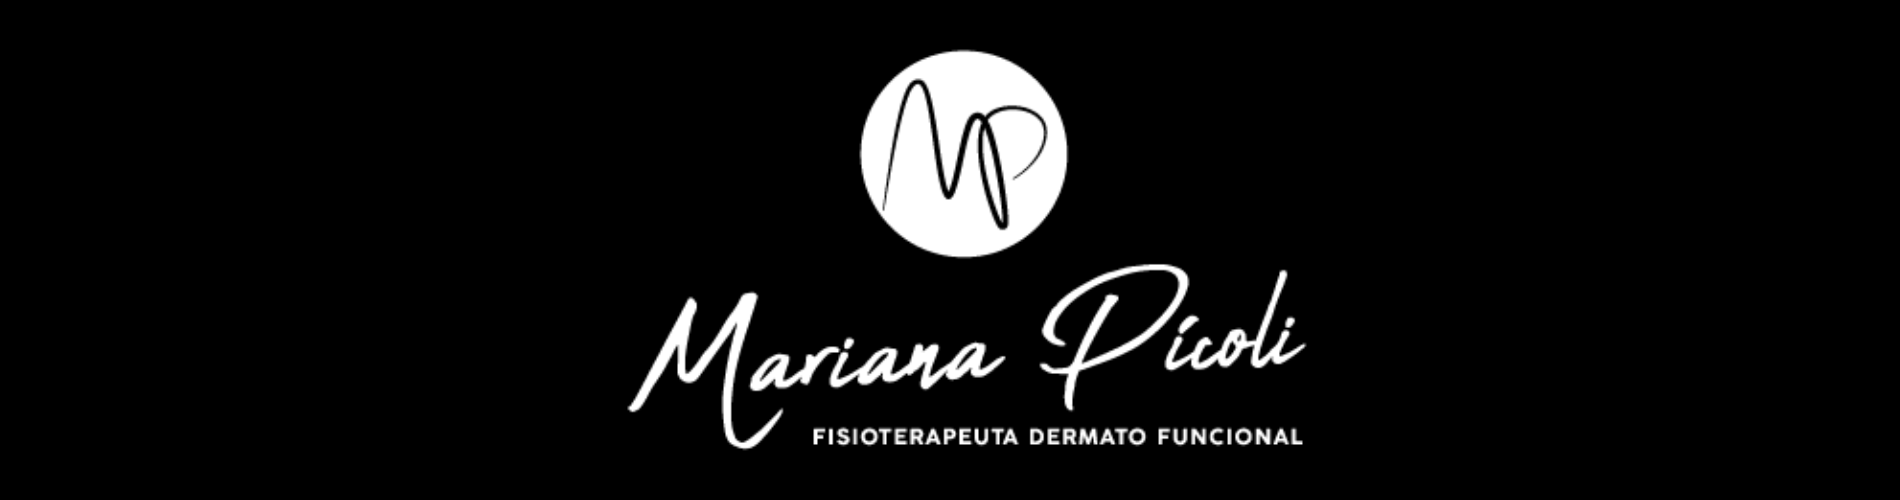 Mariana Pícoli